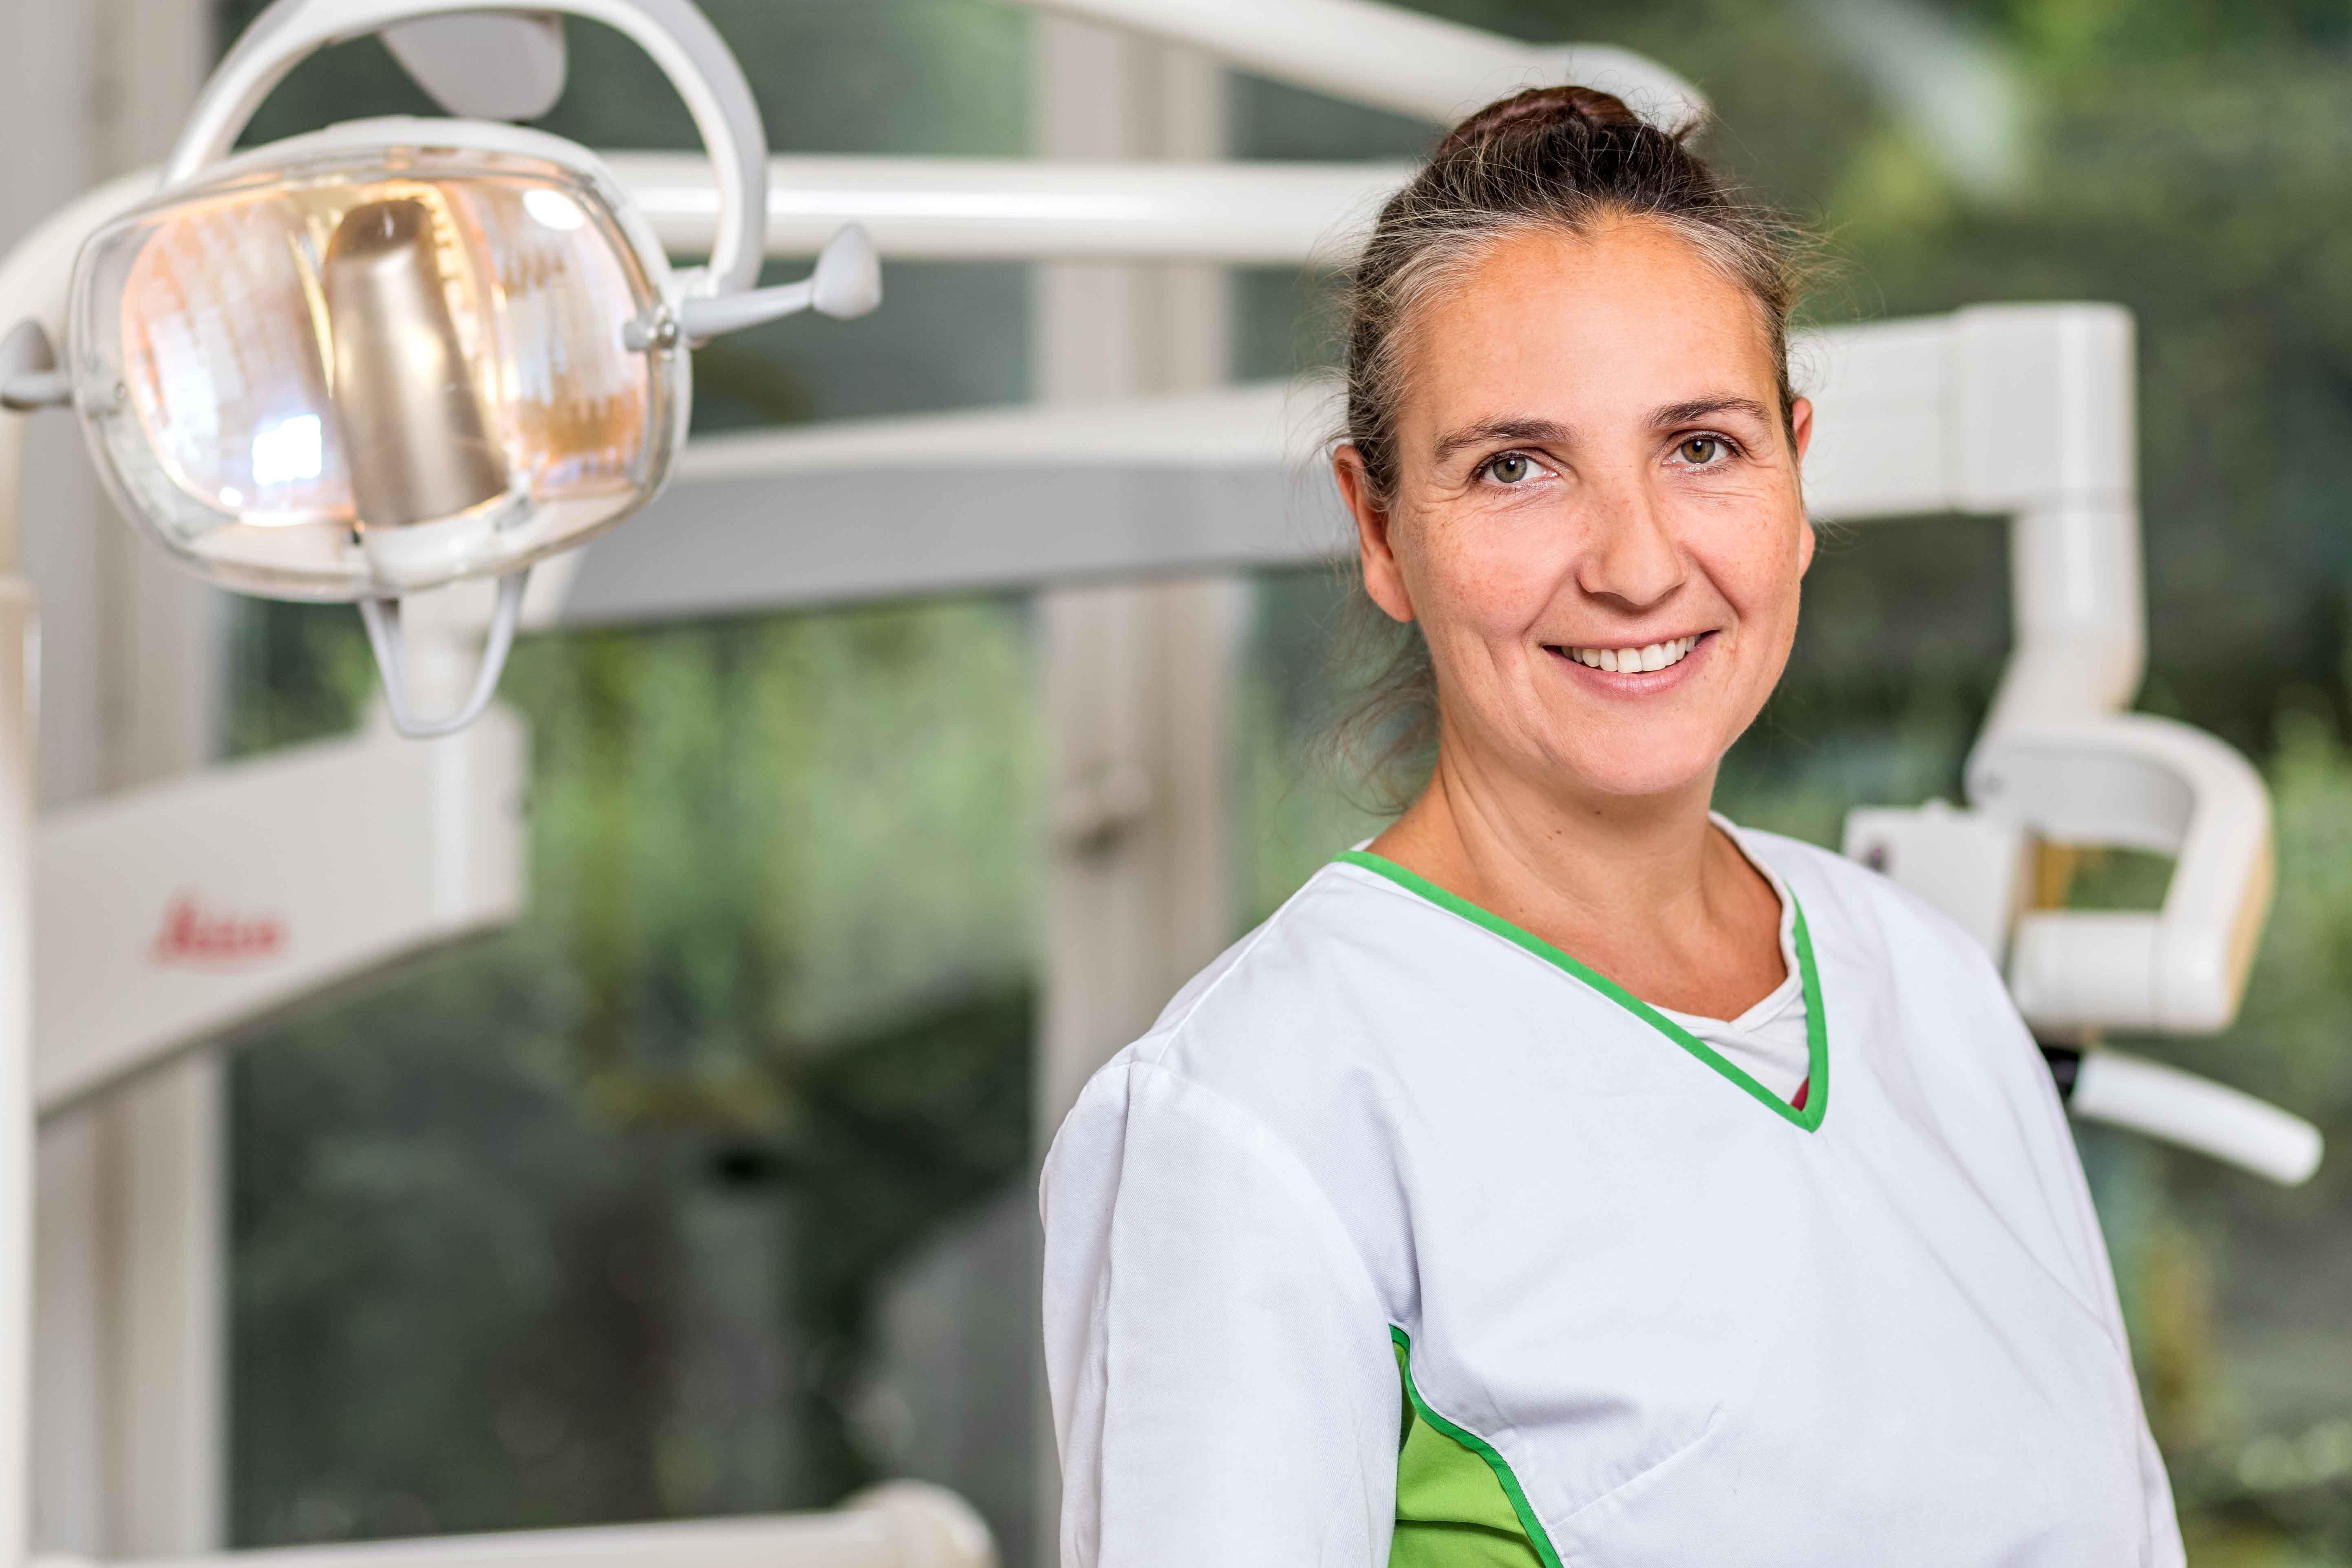 Zahnarztpraxis Dr. med. dent. Natalie Lettmann, Schorlemerstr. 111 in Düsseldorf